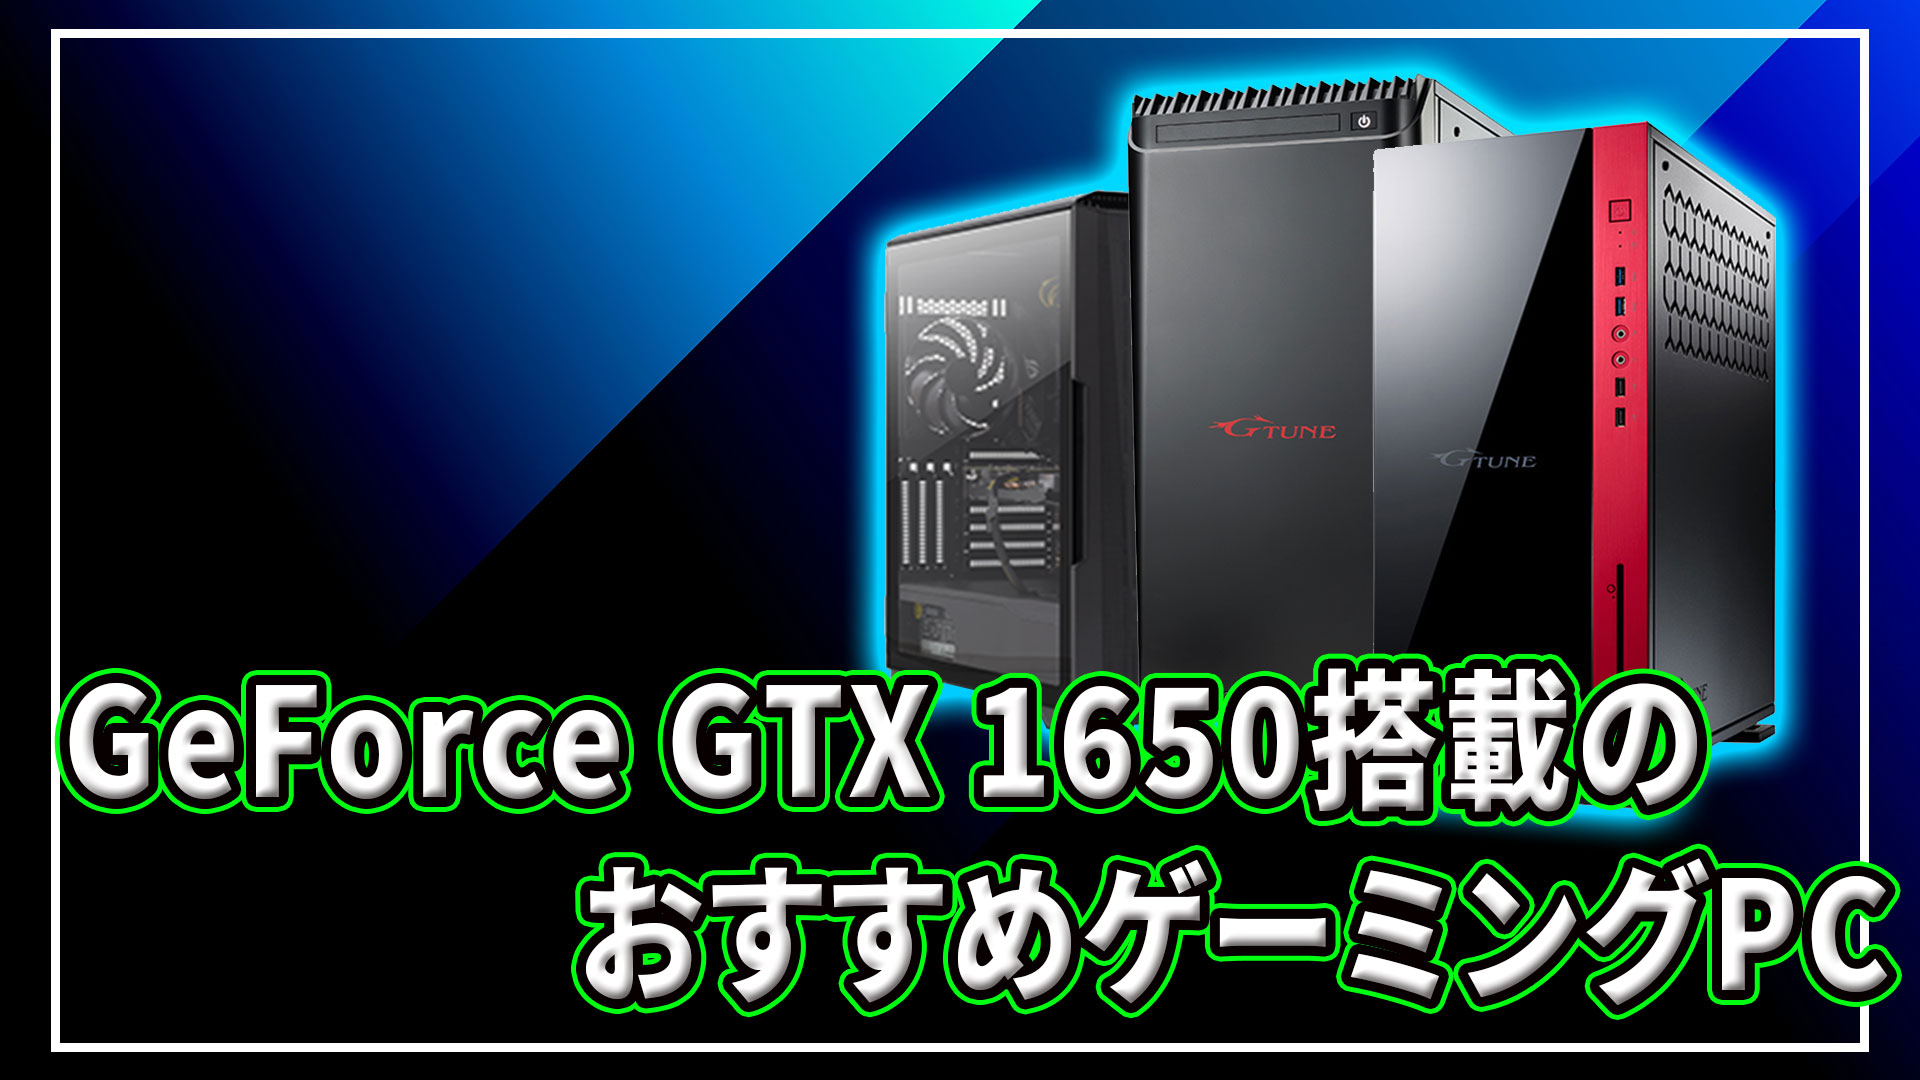 ｢NVIDIA GeForce GTX 1650｣搭載のおすすめゲーミングPC4選